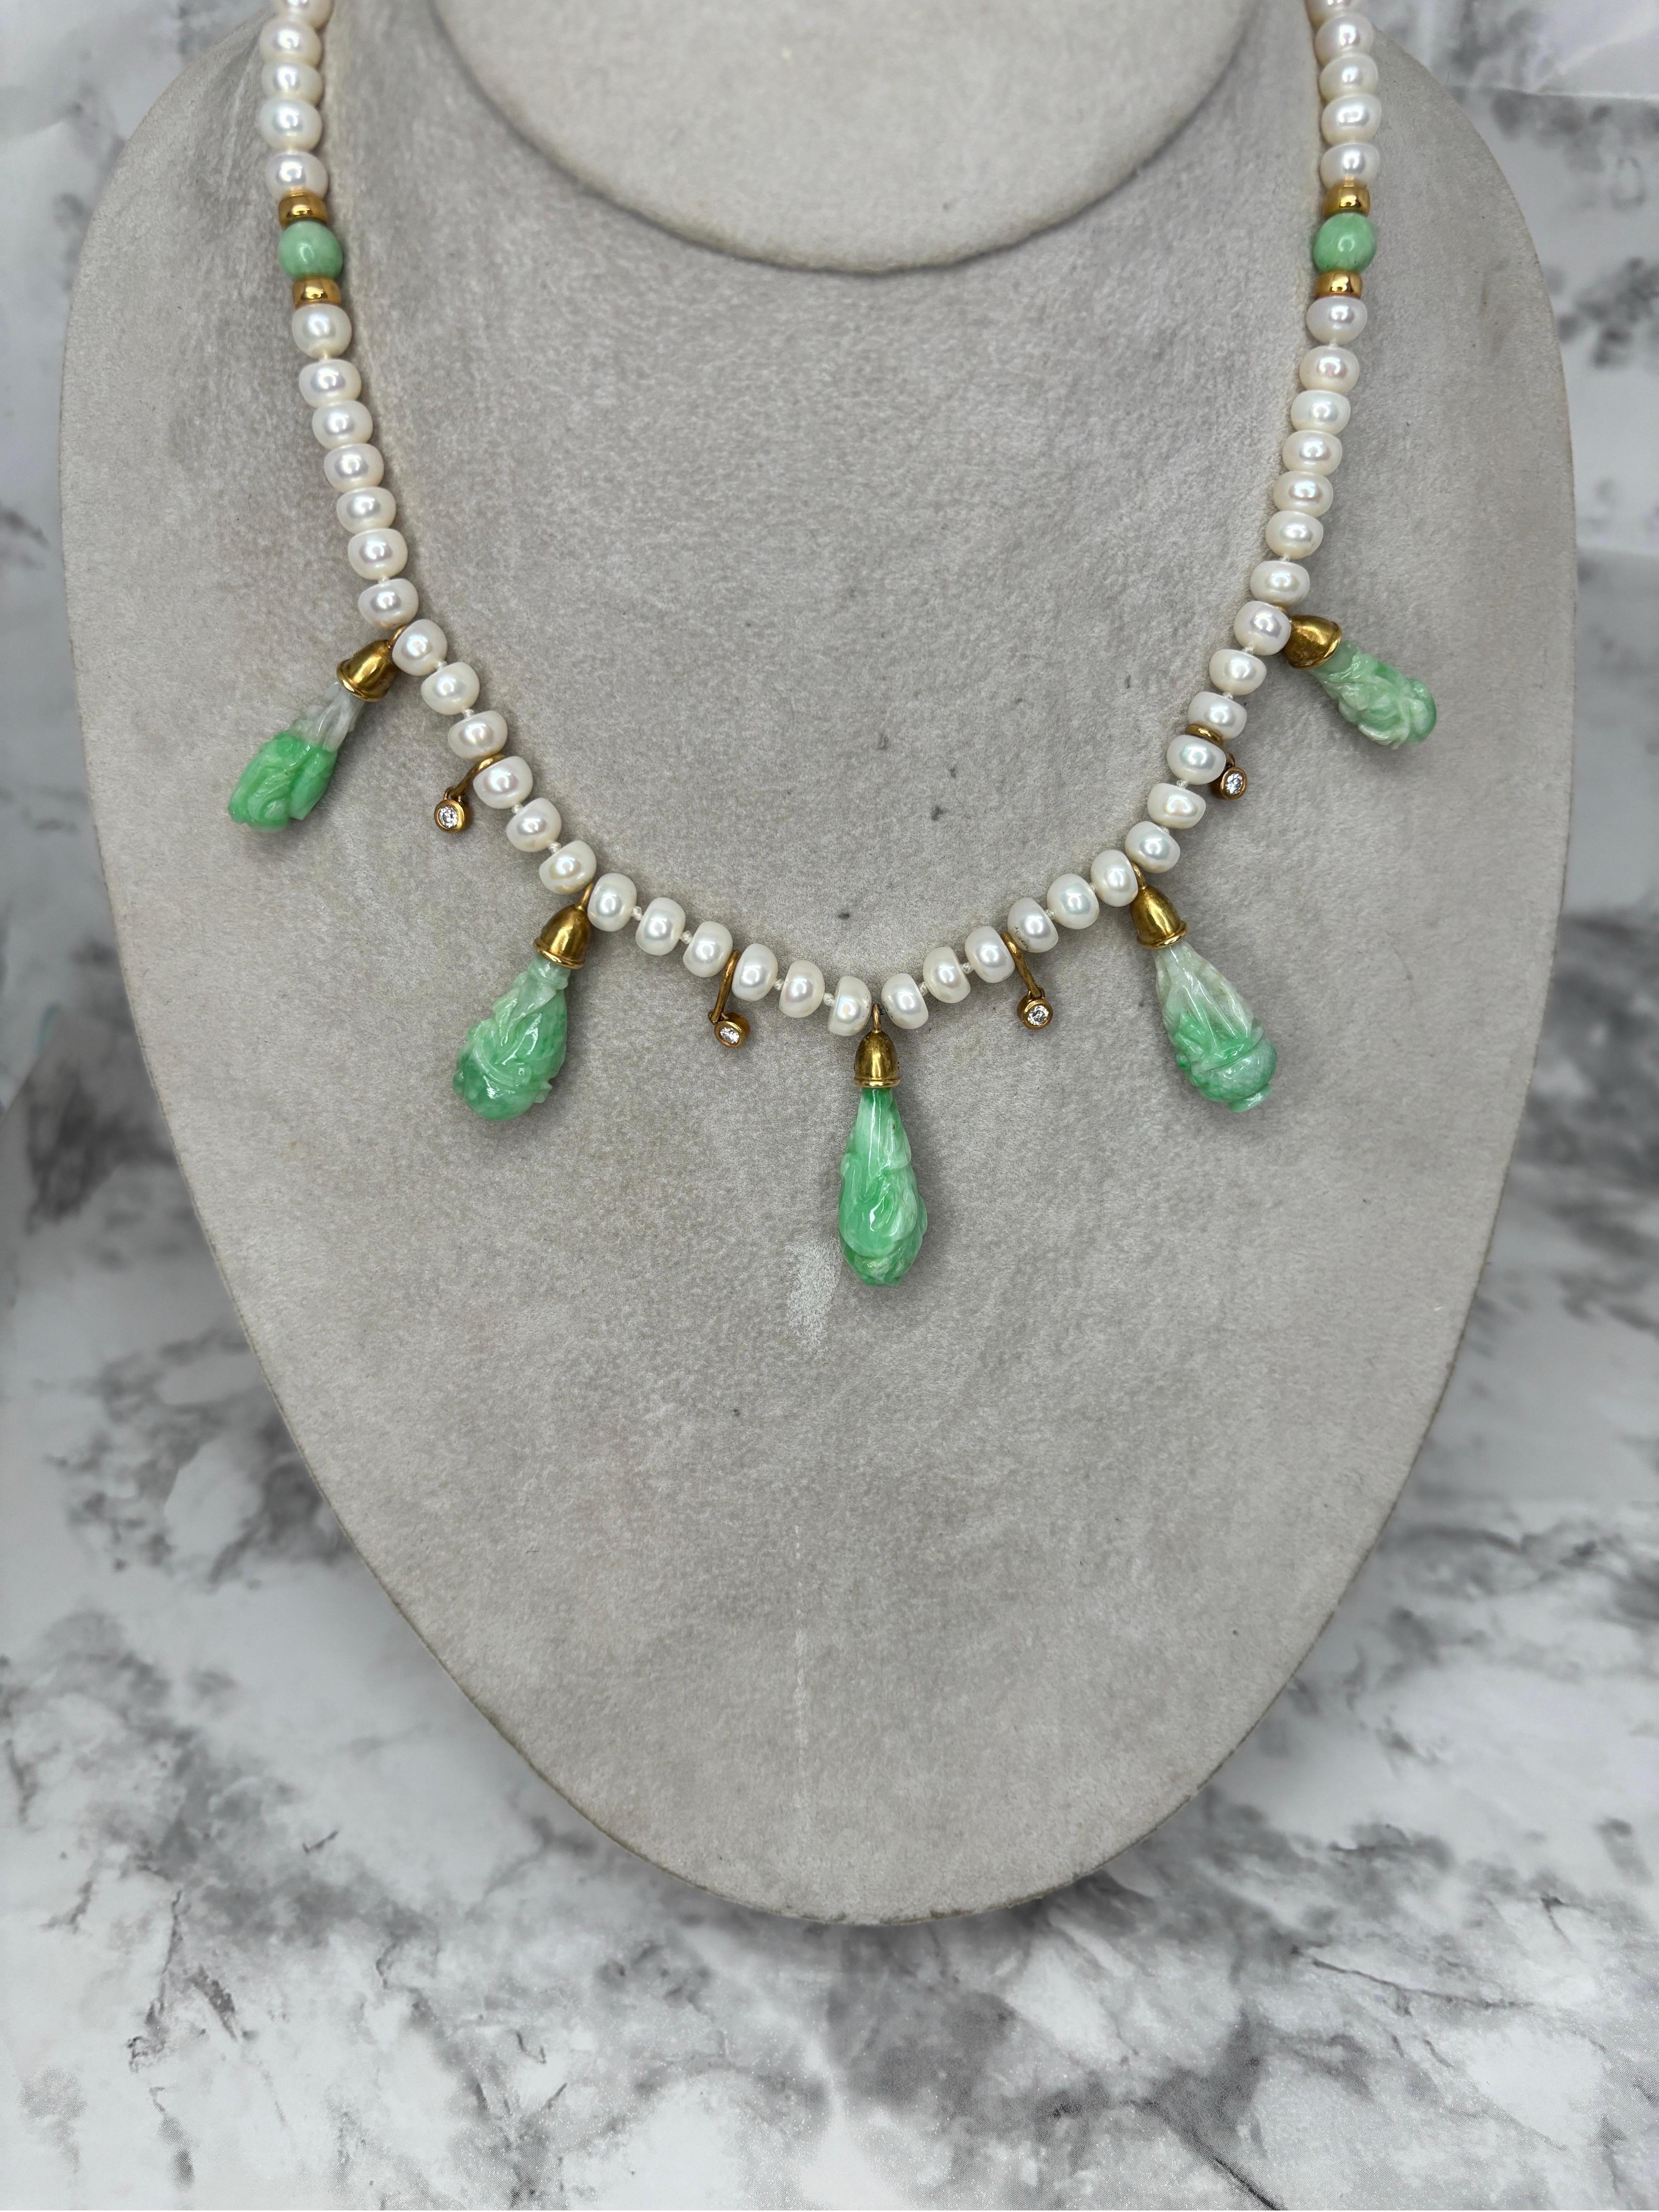 Diese exquisite Halskette aus geschnitztem Jadeit, Diamanten und Perlen aus 18 Karat Gelbgold ist ein Meisterwerk der Juwelierkunst, das Eleganz, Handwerkskunst und die zeitlose Anziehungskraft kostbarer Materialien vereint. 

Die Halskette besteht